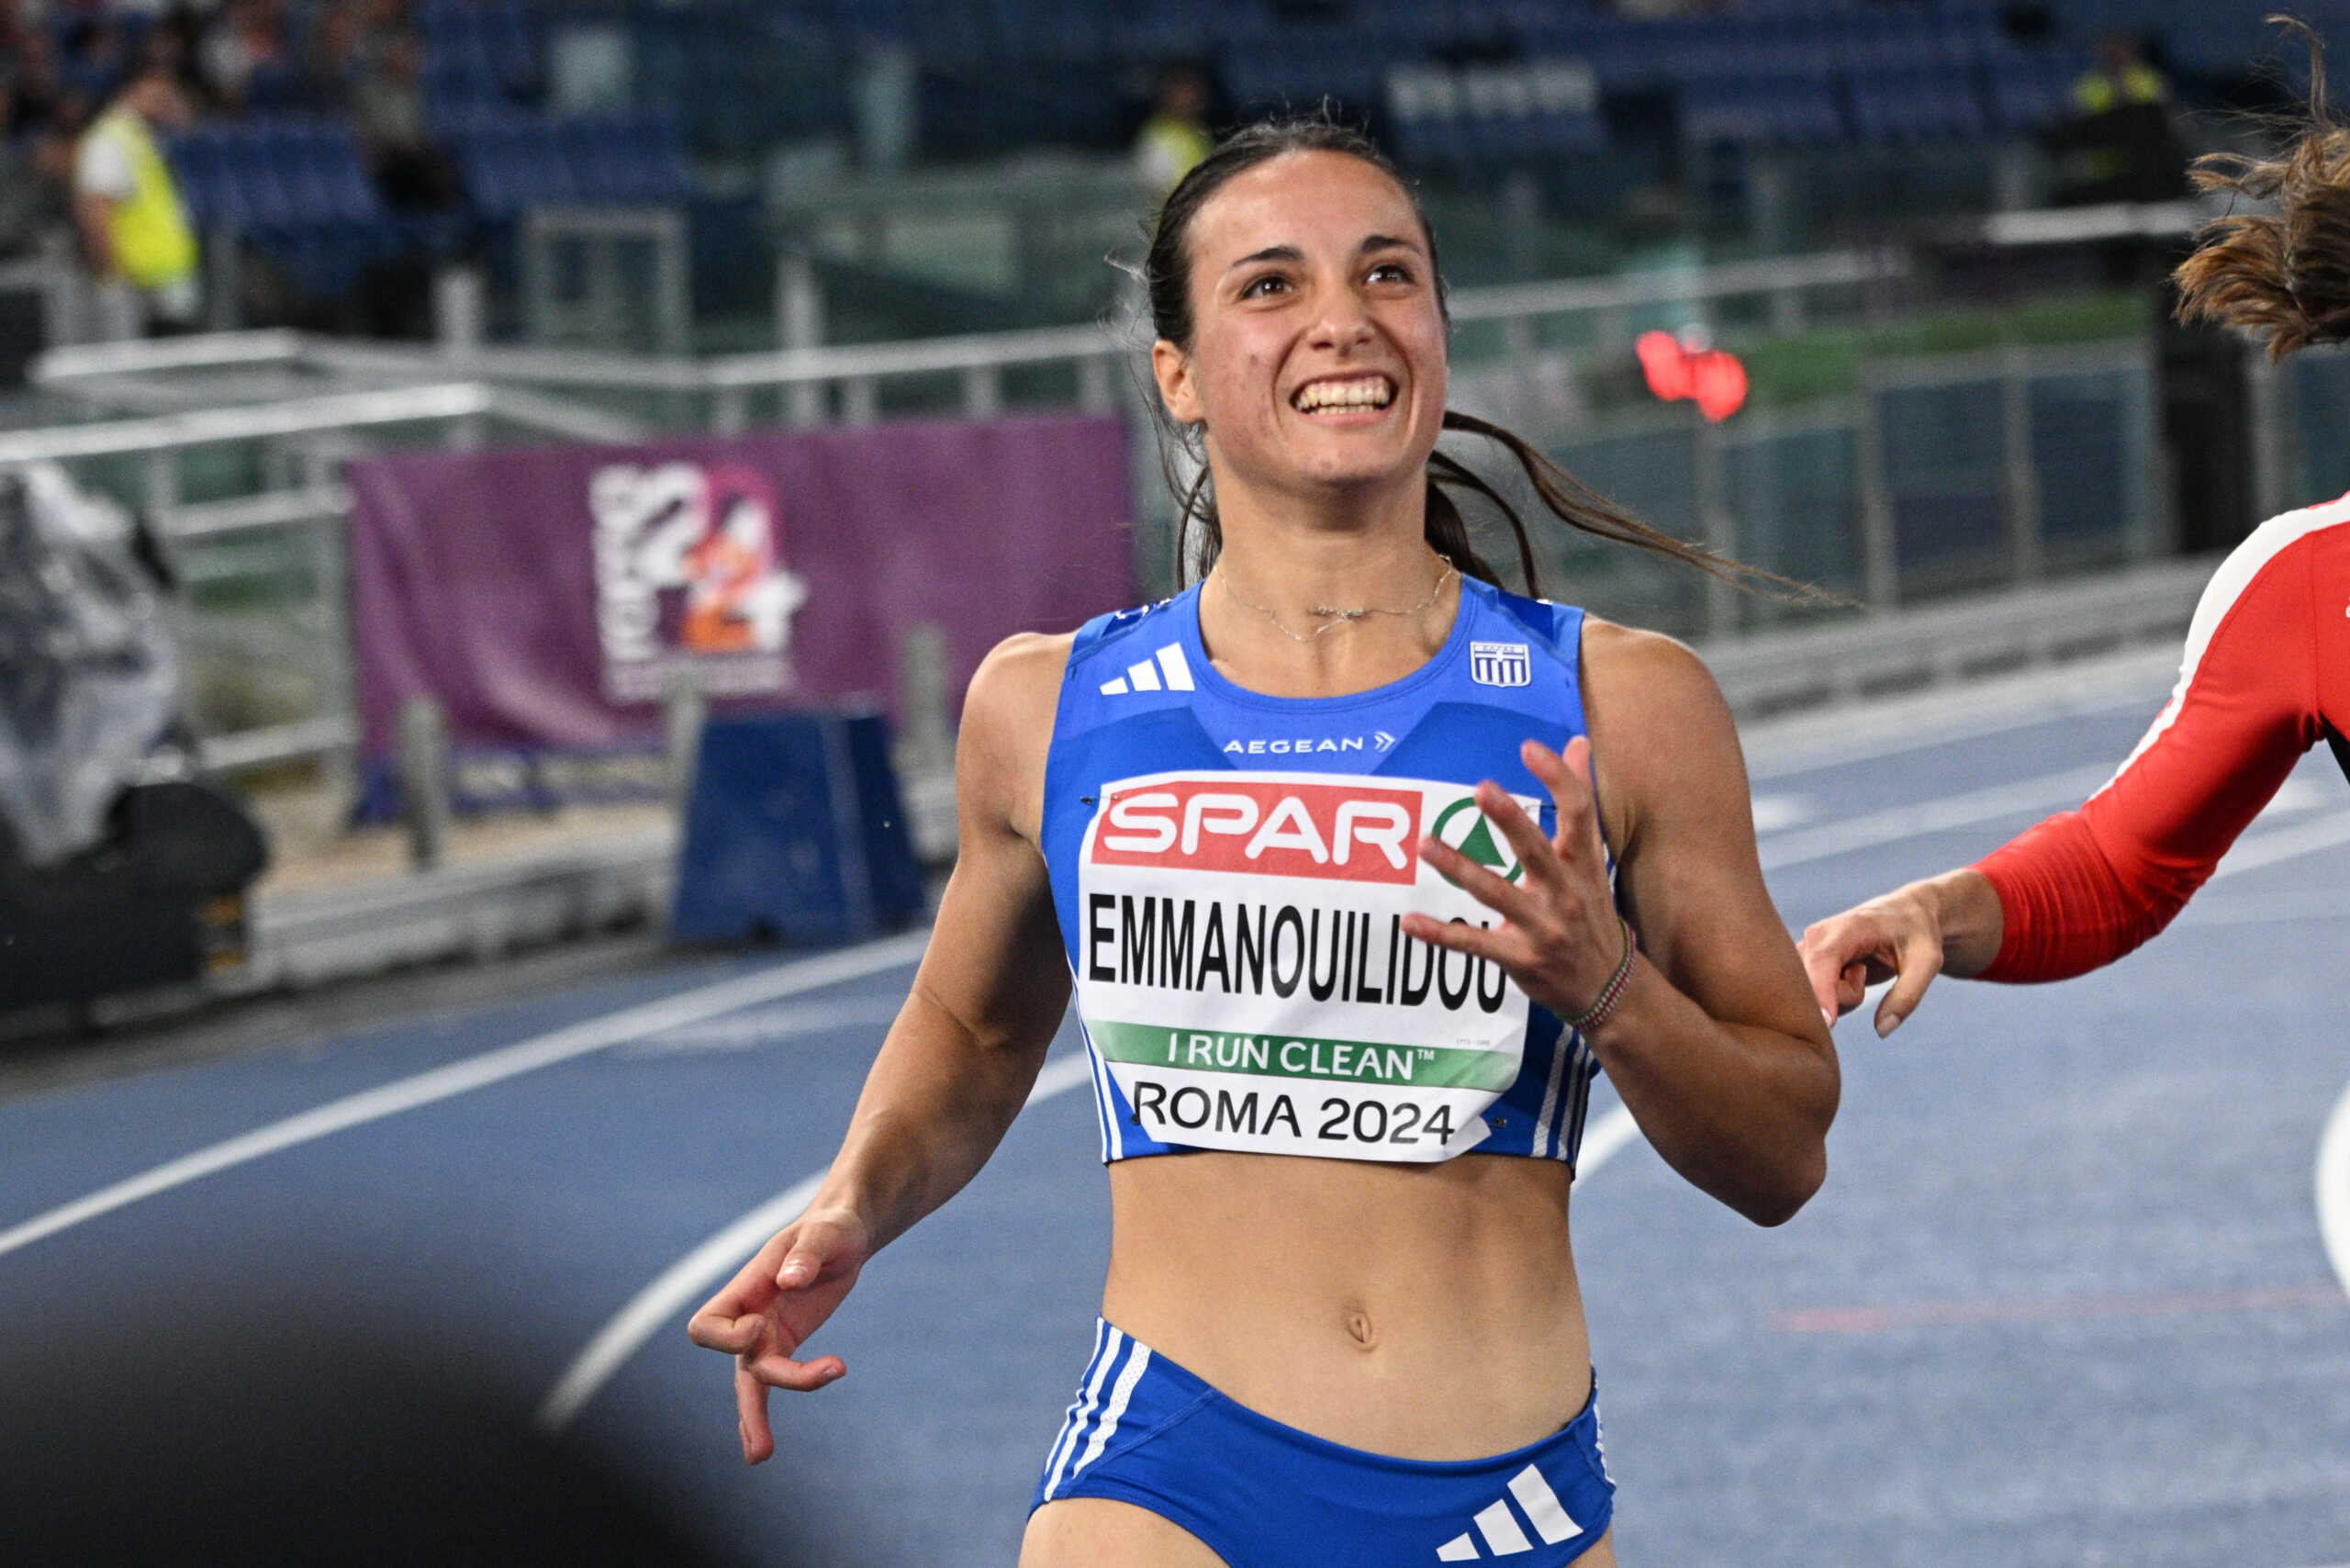 Ευρωπαϊκό στίβου: Η Πολυνίκη Εμμανουηλίδου δεν μπόρεσε να προκριθεί στον τελικό των 100μ.